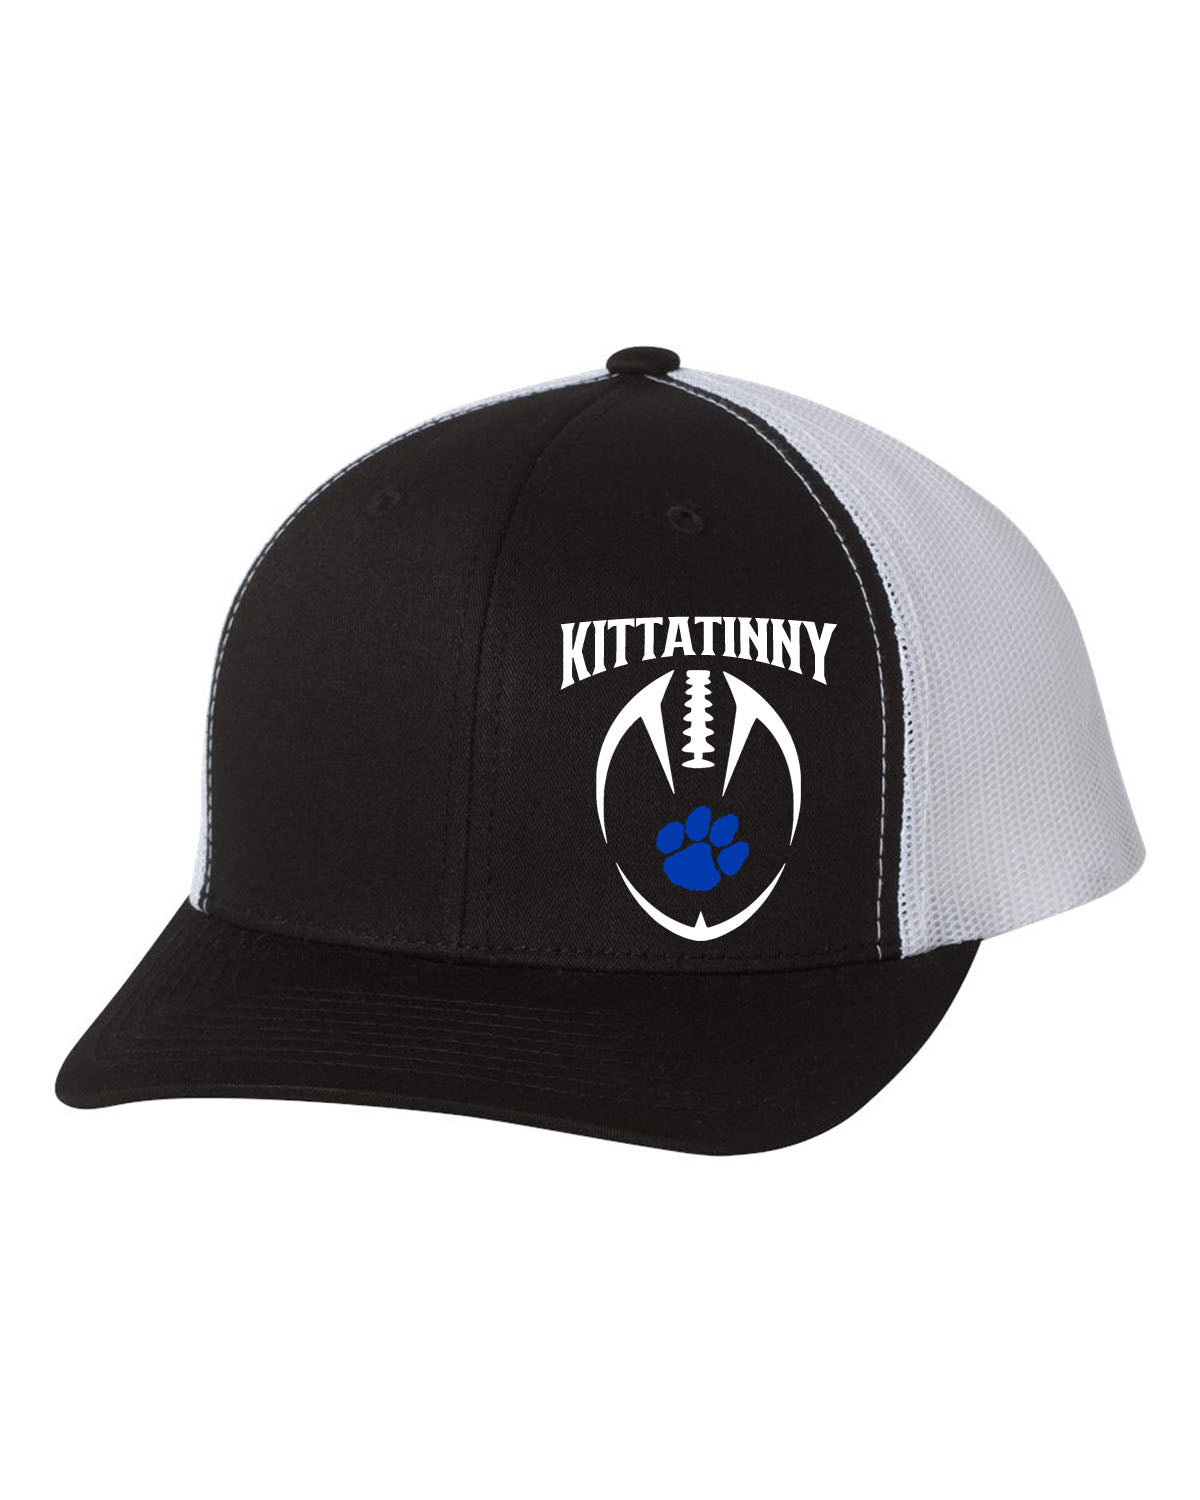 Kittatinny Football design 8 Trucker Hat